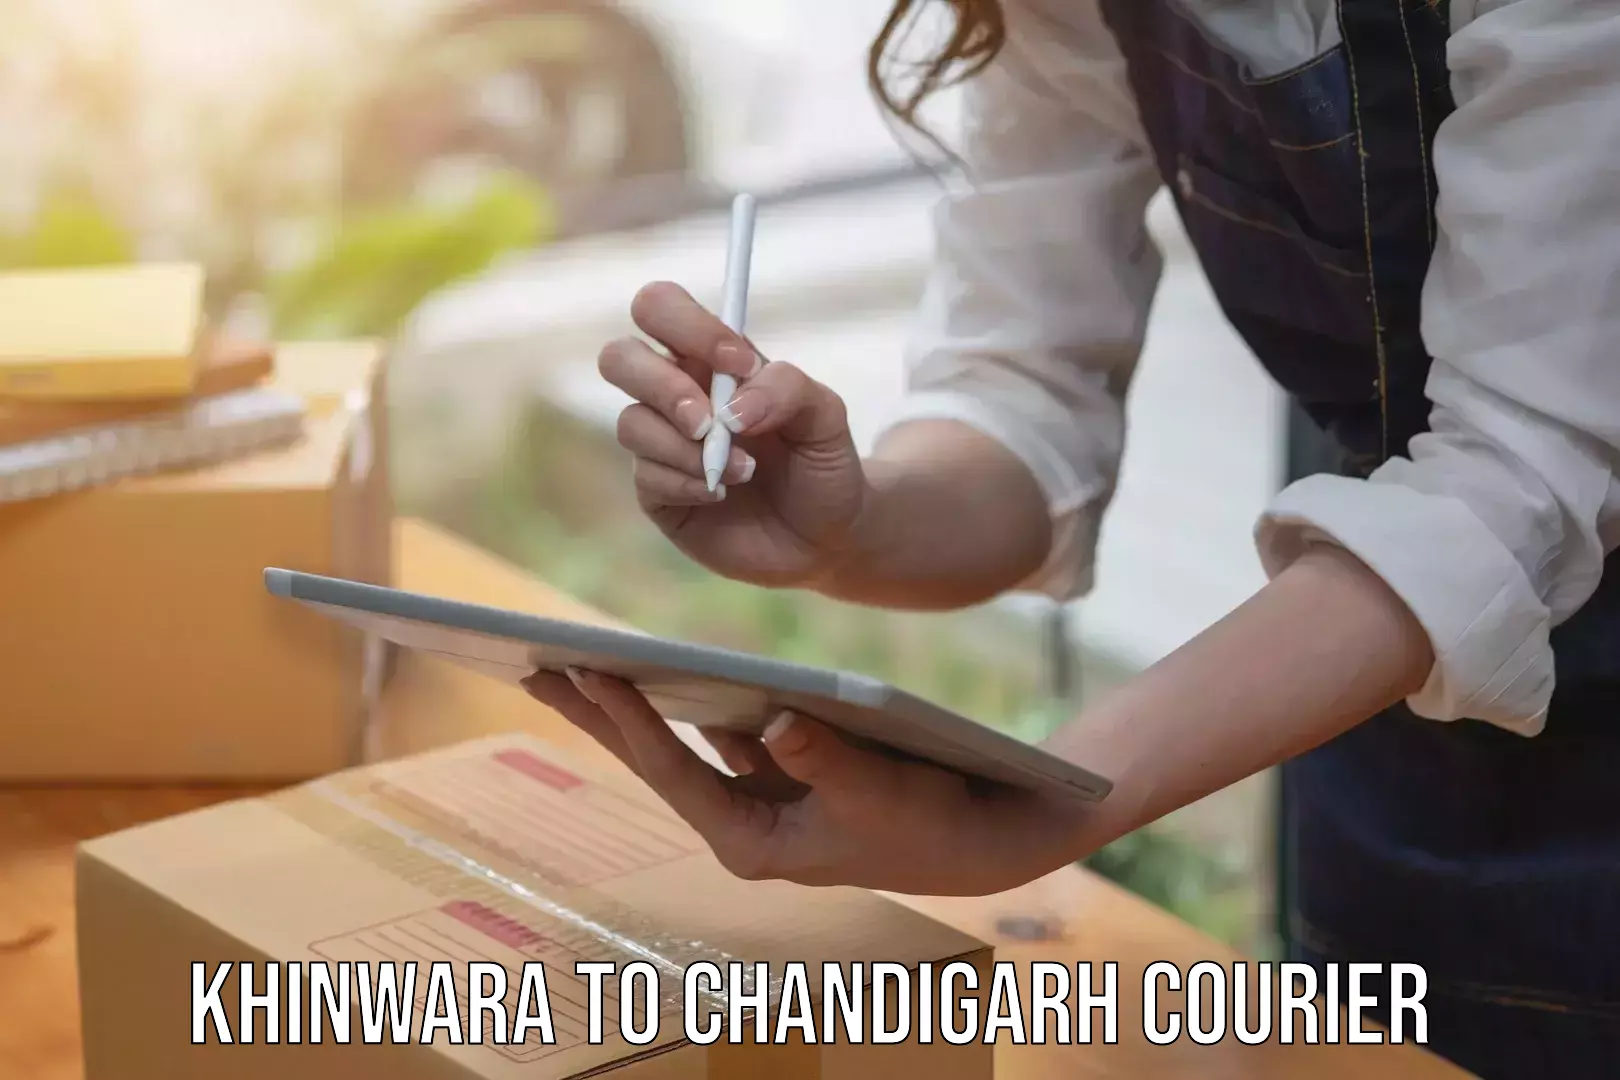 Customer-focused courier Khinwara to Chandigarh